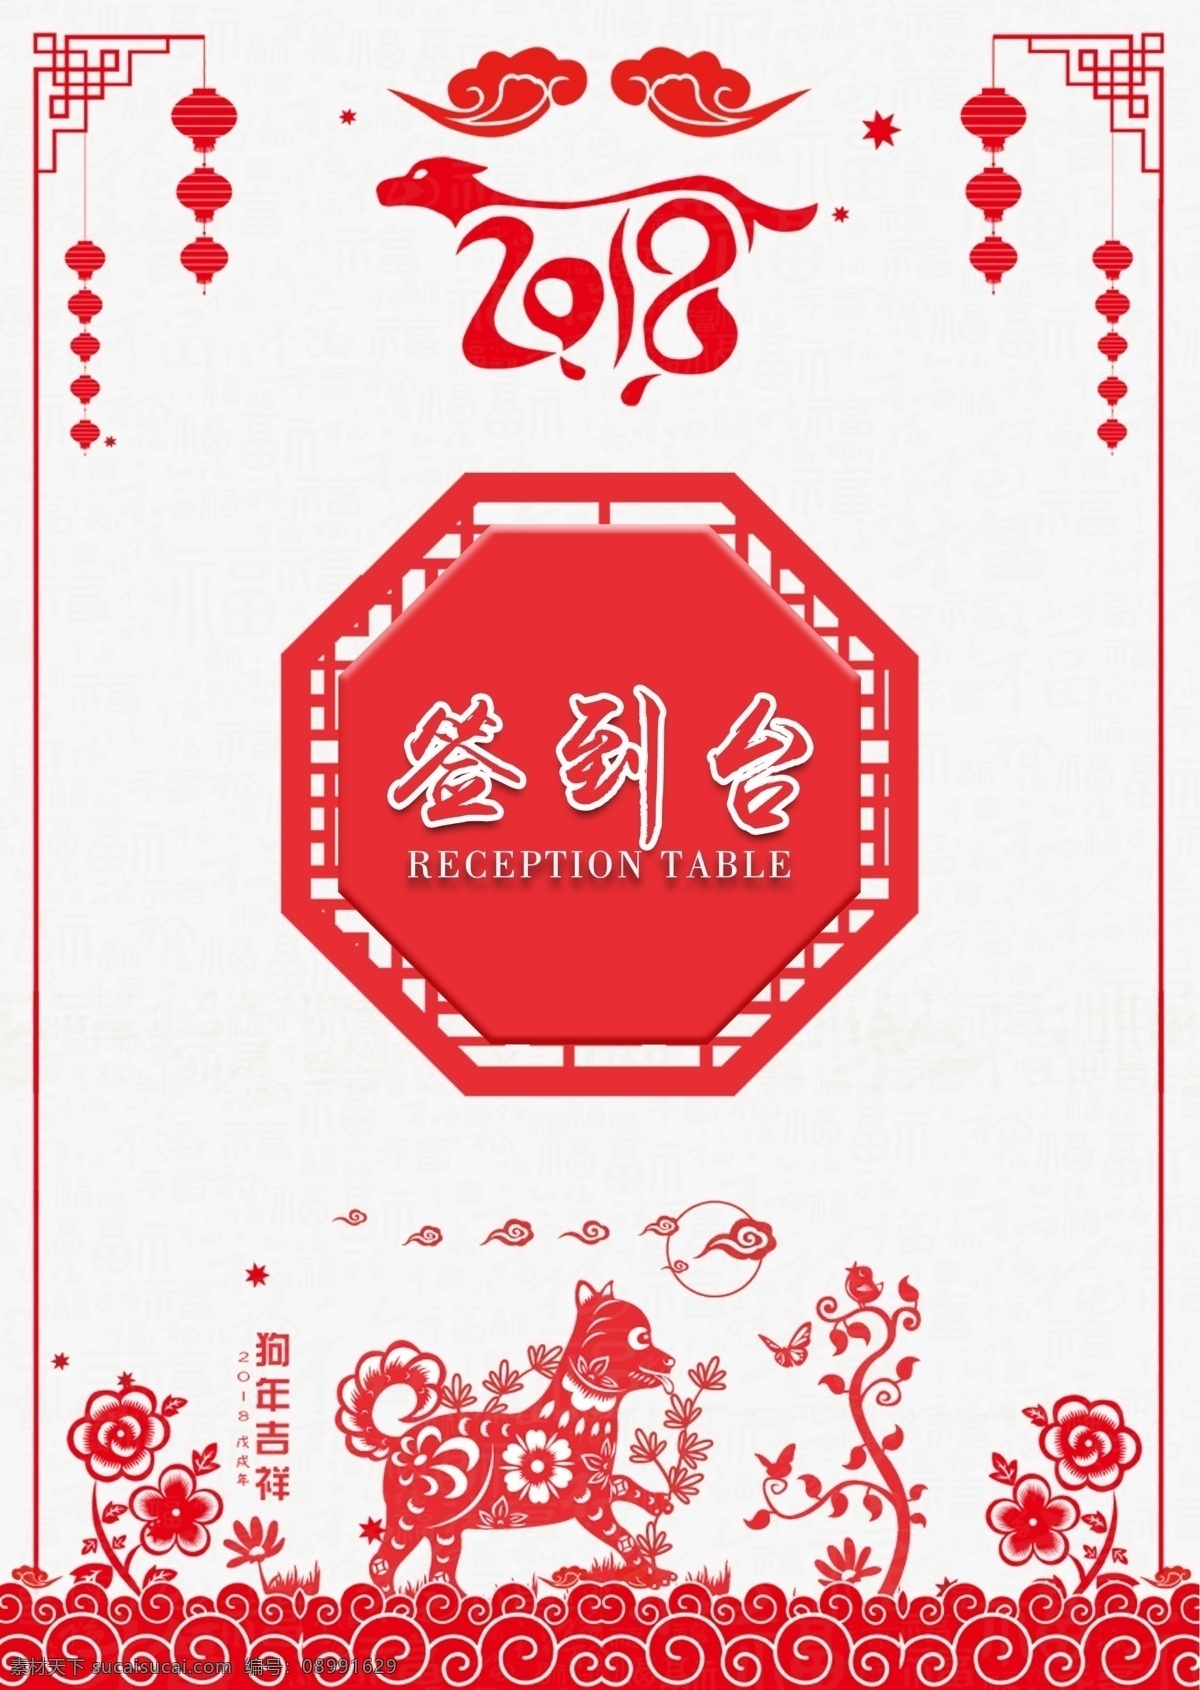 剪纸 风 处 签到 桌 卡 桌牌 模板 台卡 签到处 红色背景 中国风 桌卡 桌牌设计 活动签到 活动桌卡 活动桌牌 卡桌设计